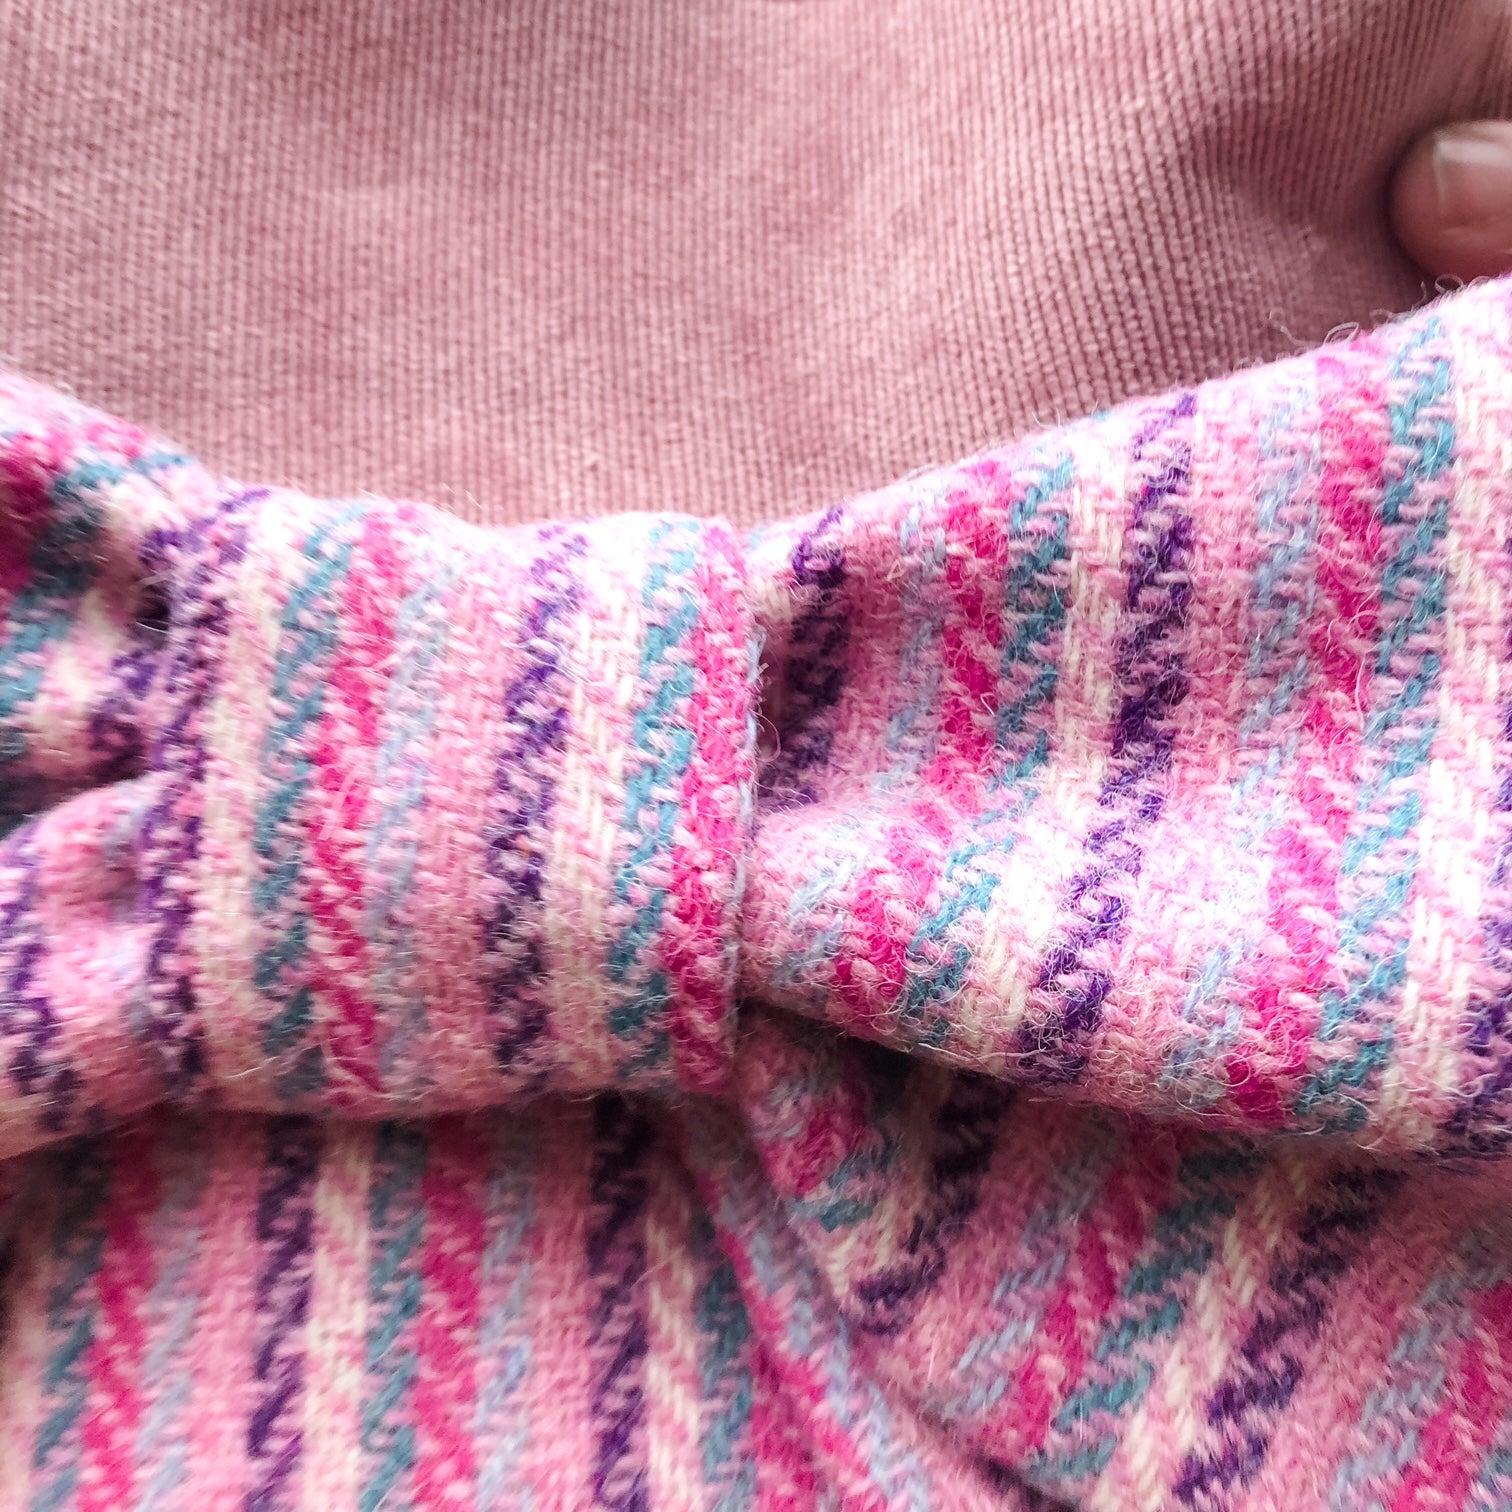 Shoulder Bag -  Harris Tweed Wool - Candy Floss Baby Pink, Purple and Teal Herringbone